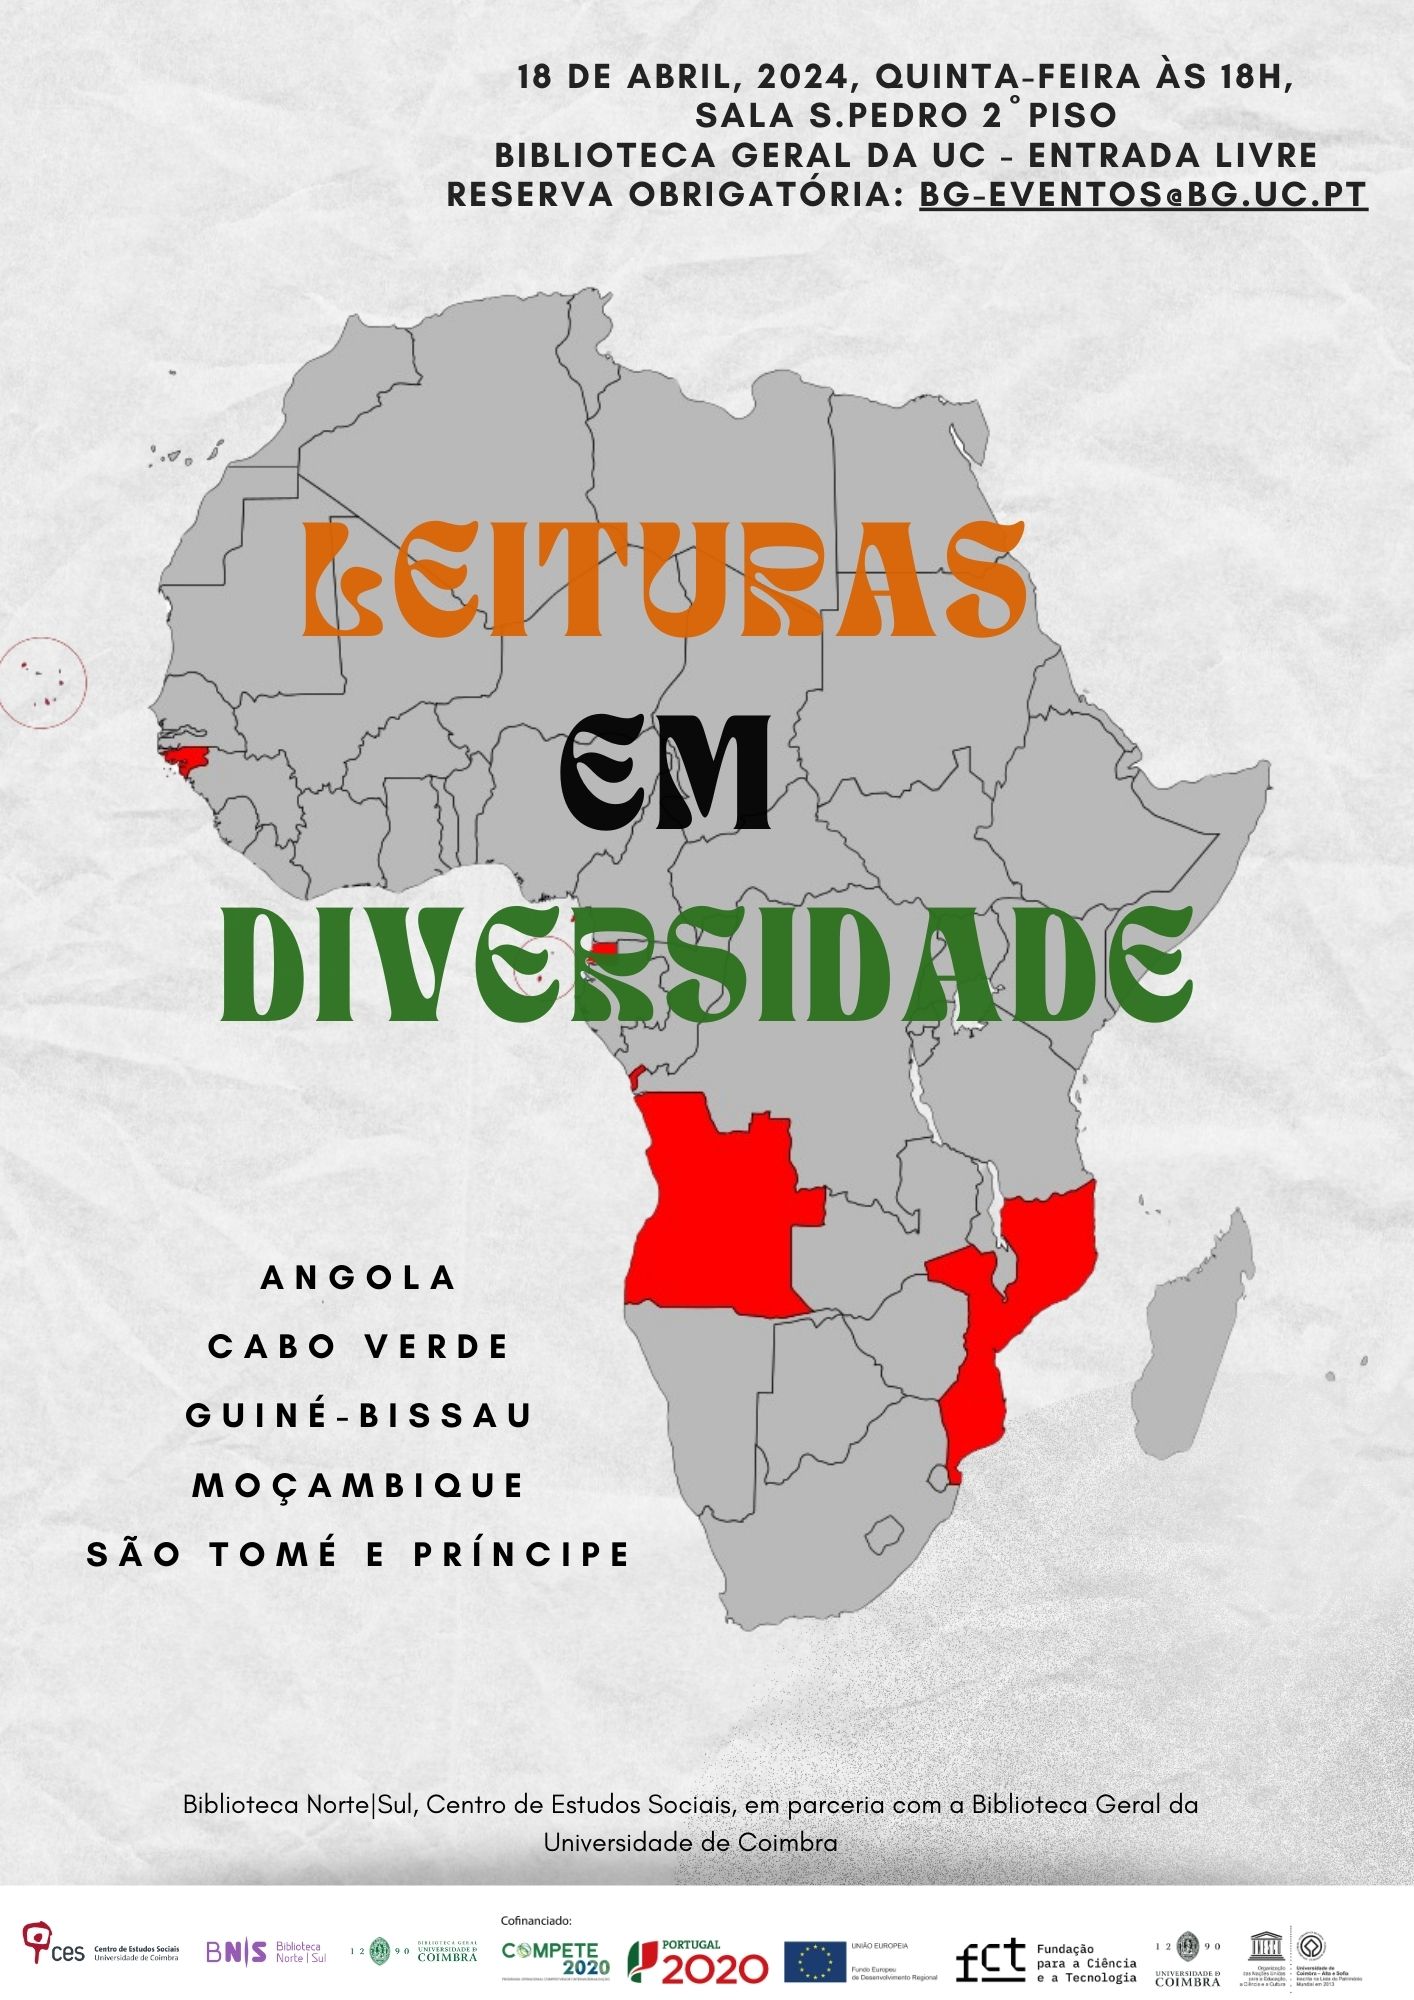 Leituras em Diversidade: Em África: Angola; Cabo Verde; Guiné-Bissau; Moçambique; São Tomé e Príncipe<span id="edit_44901"><script>$(function() { $('#edit_44901').load( "/myces/user/editobj.php?tipo=evento&id=44901" ); });</script></span>